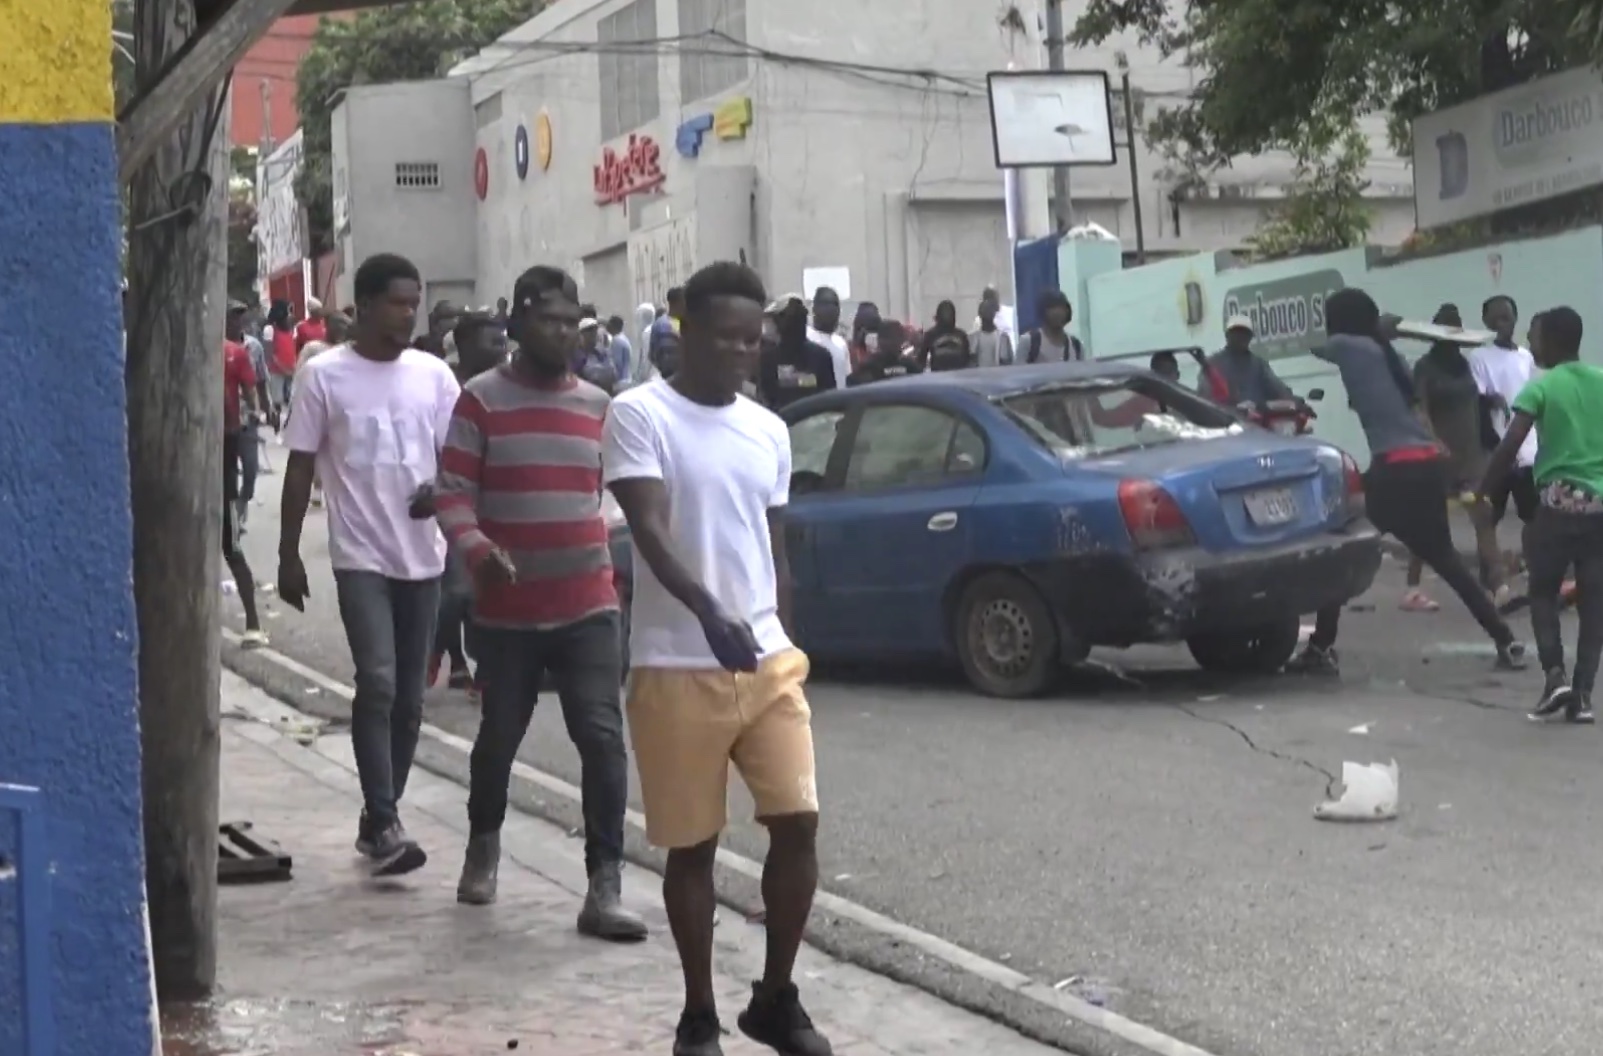     Haïti : 5 morts dans des manifestations contre le Premier ministre

